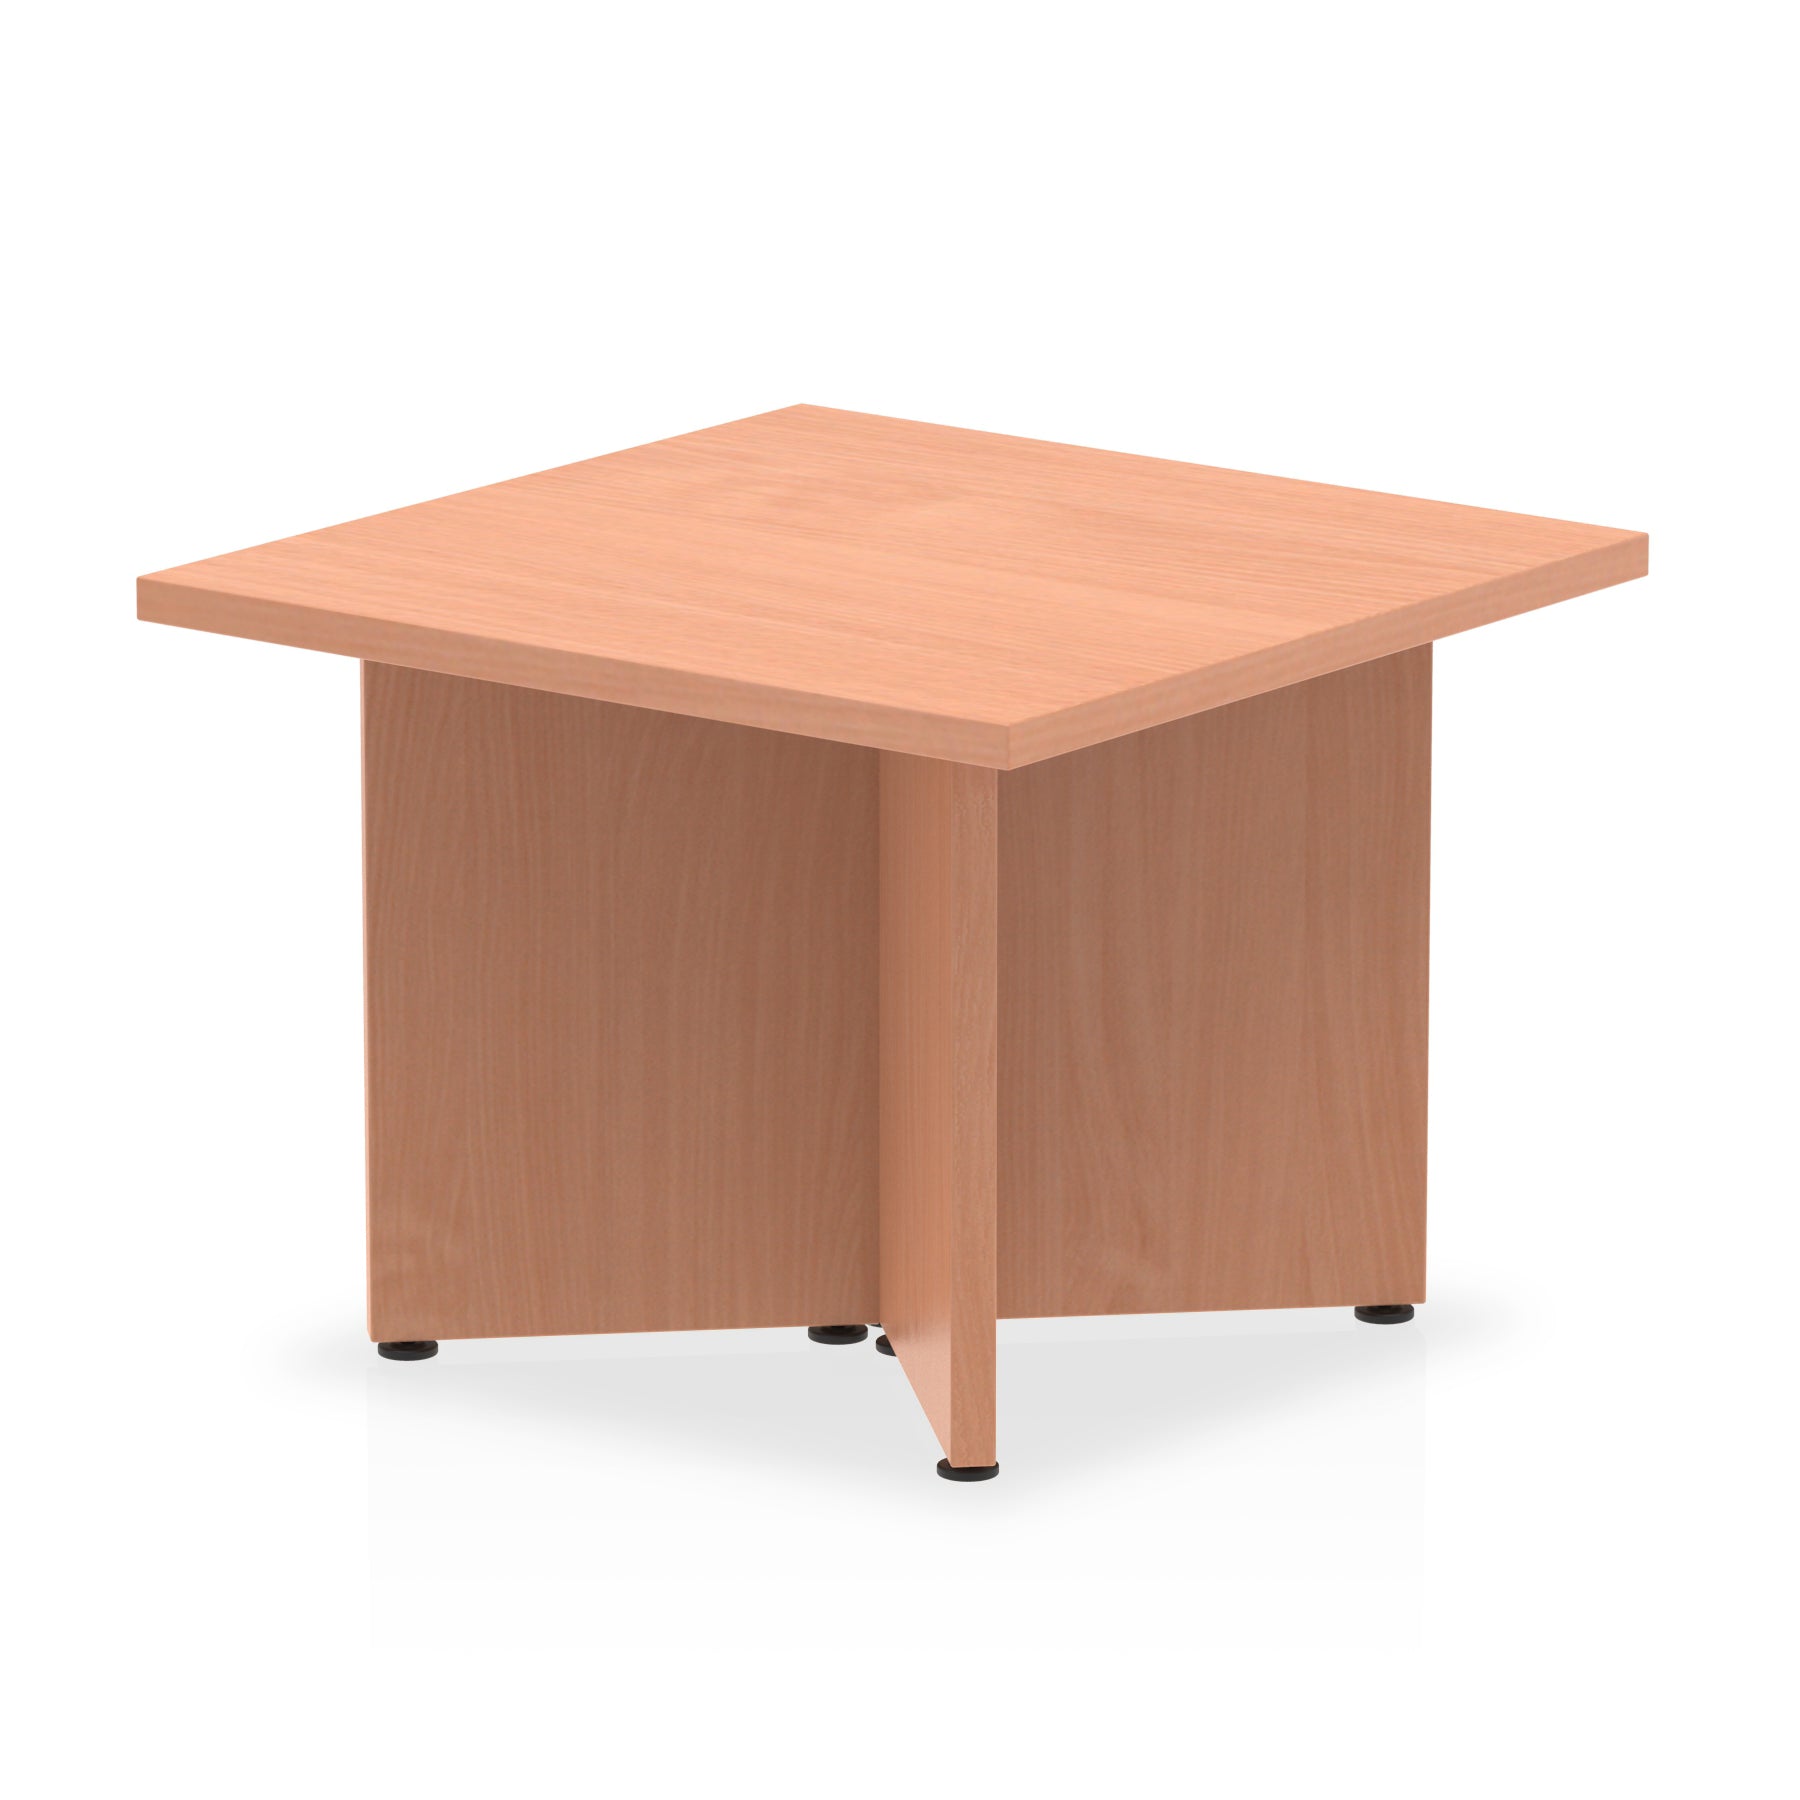 Photos - Dining Table Dynamic Office Solutions Impulse Coffee Table Arrowhead Leg I003424 